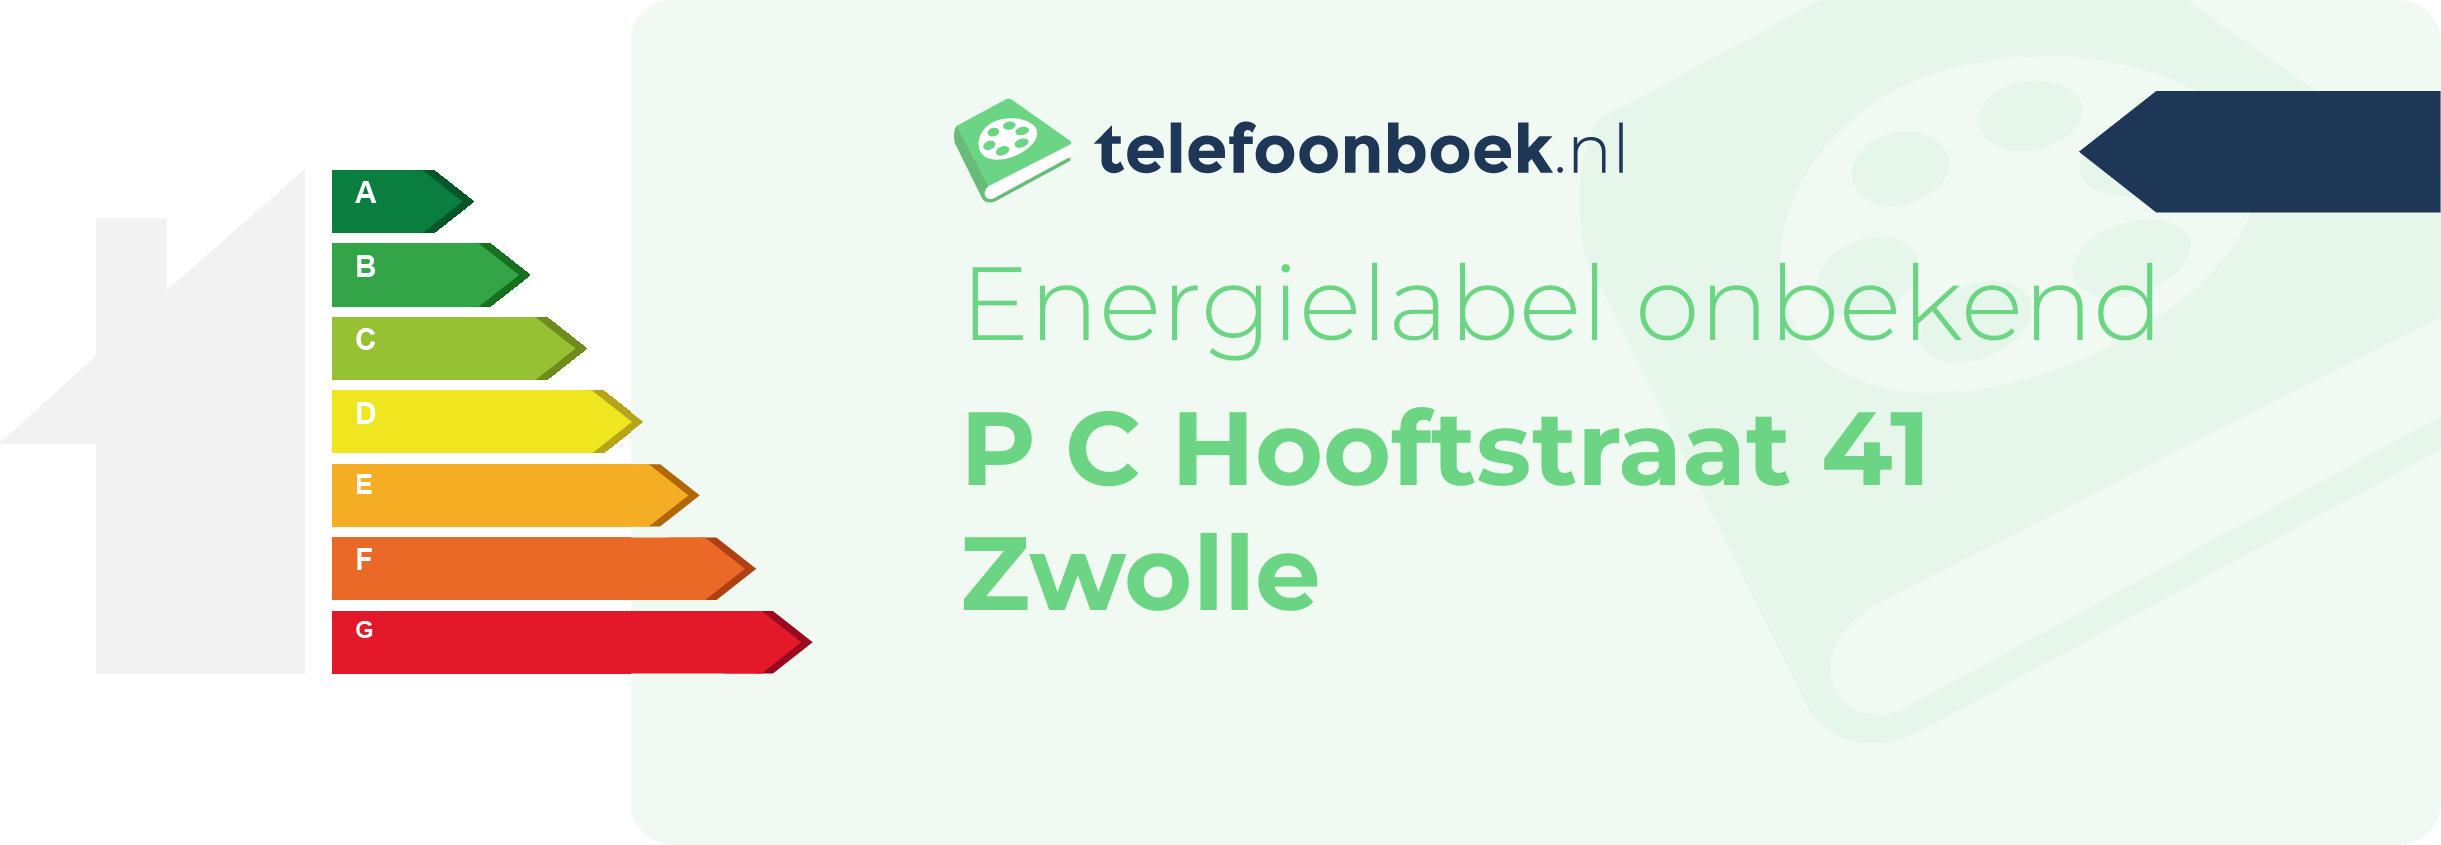 Energielabel P C Hooftstraat 41 Zwolle